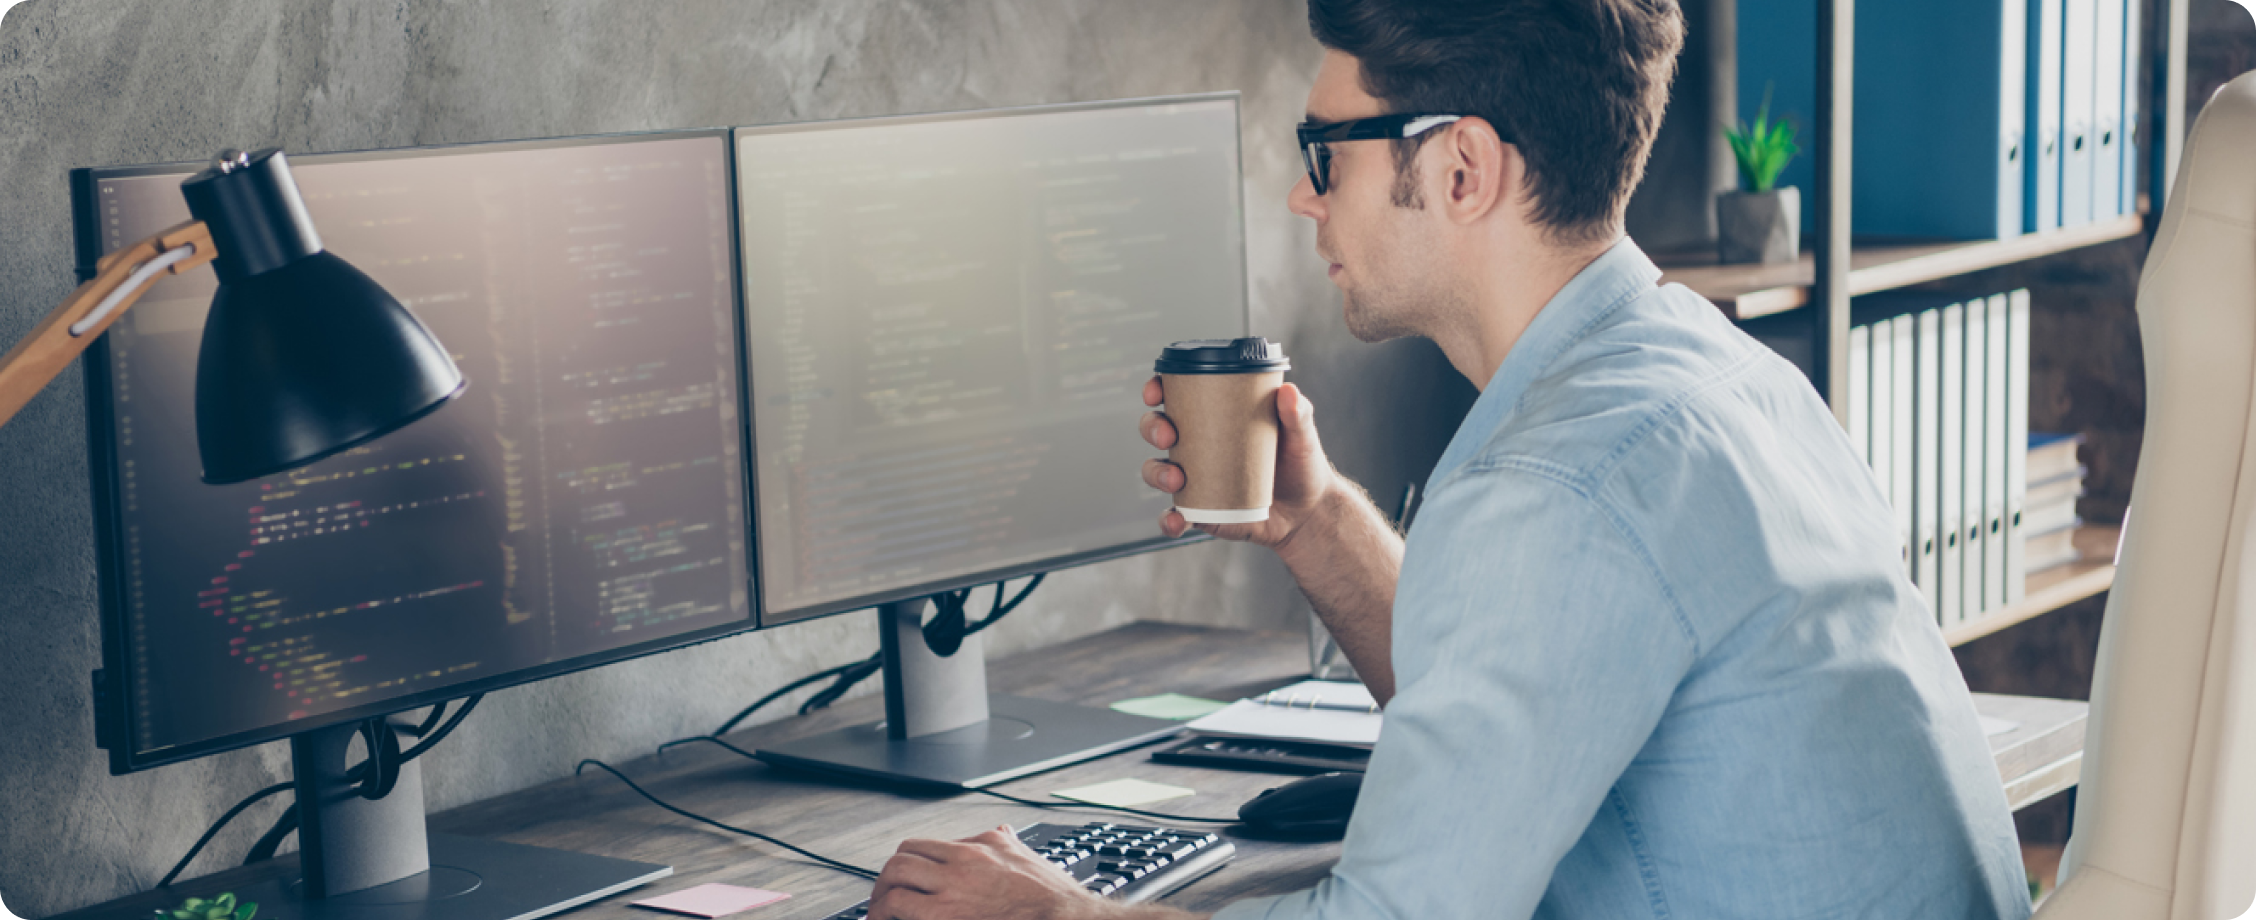 En mand med blå skjorte holder en kaffekop af papir, mens han arbejder på en stationær computer.